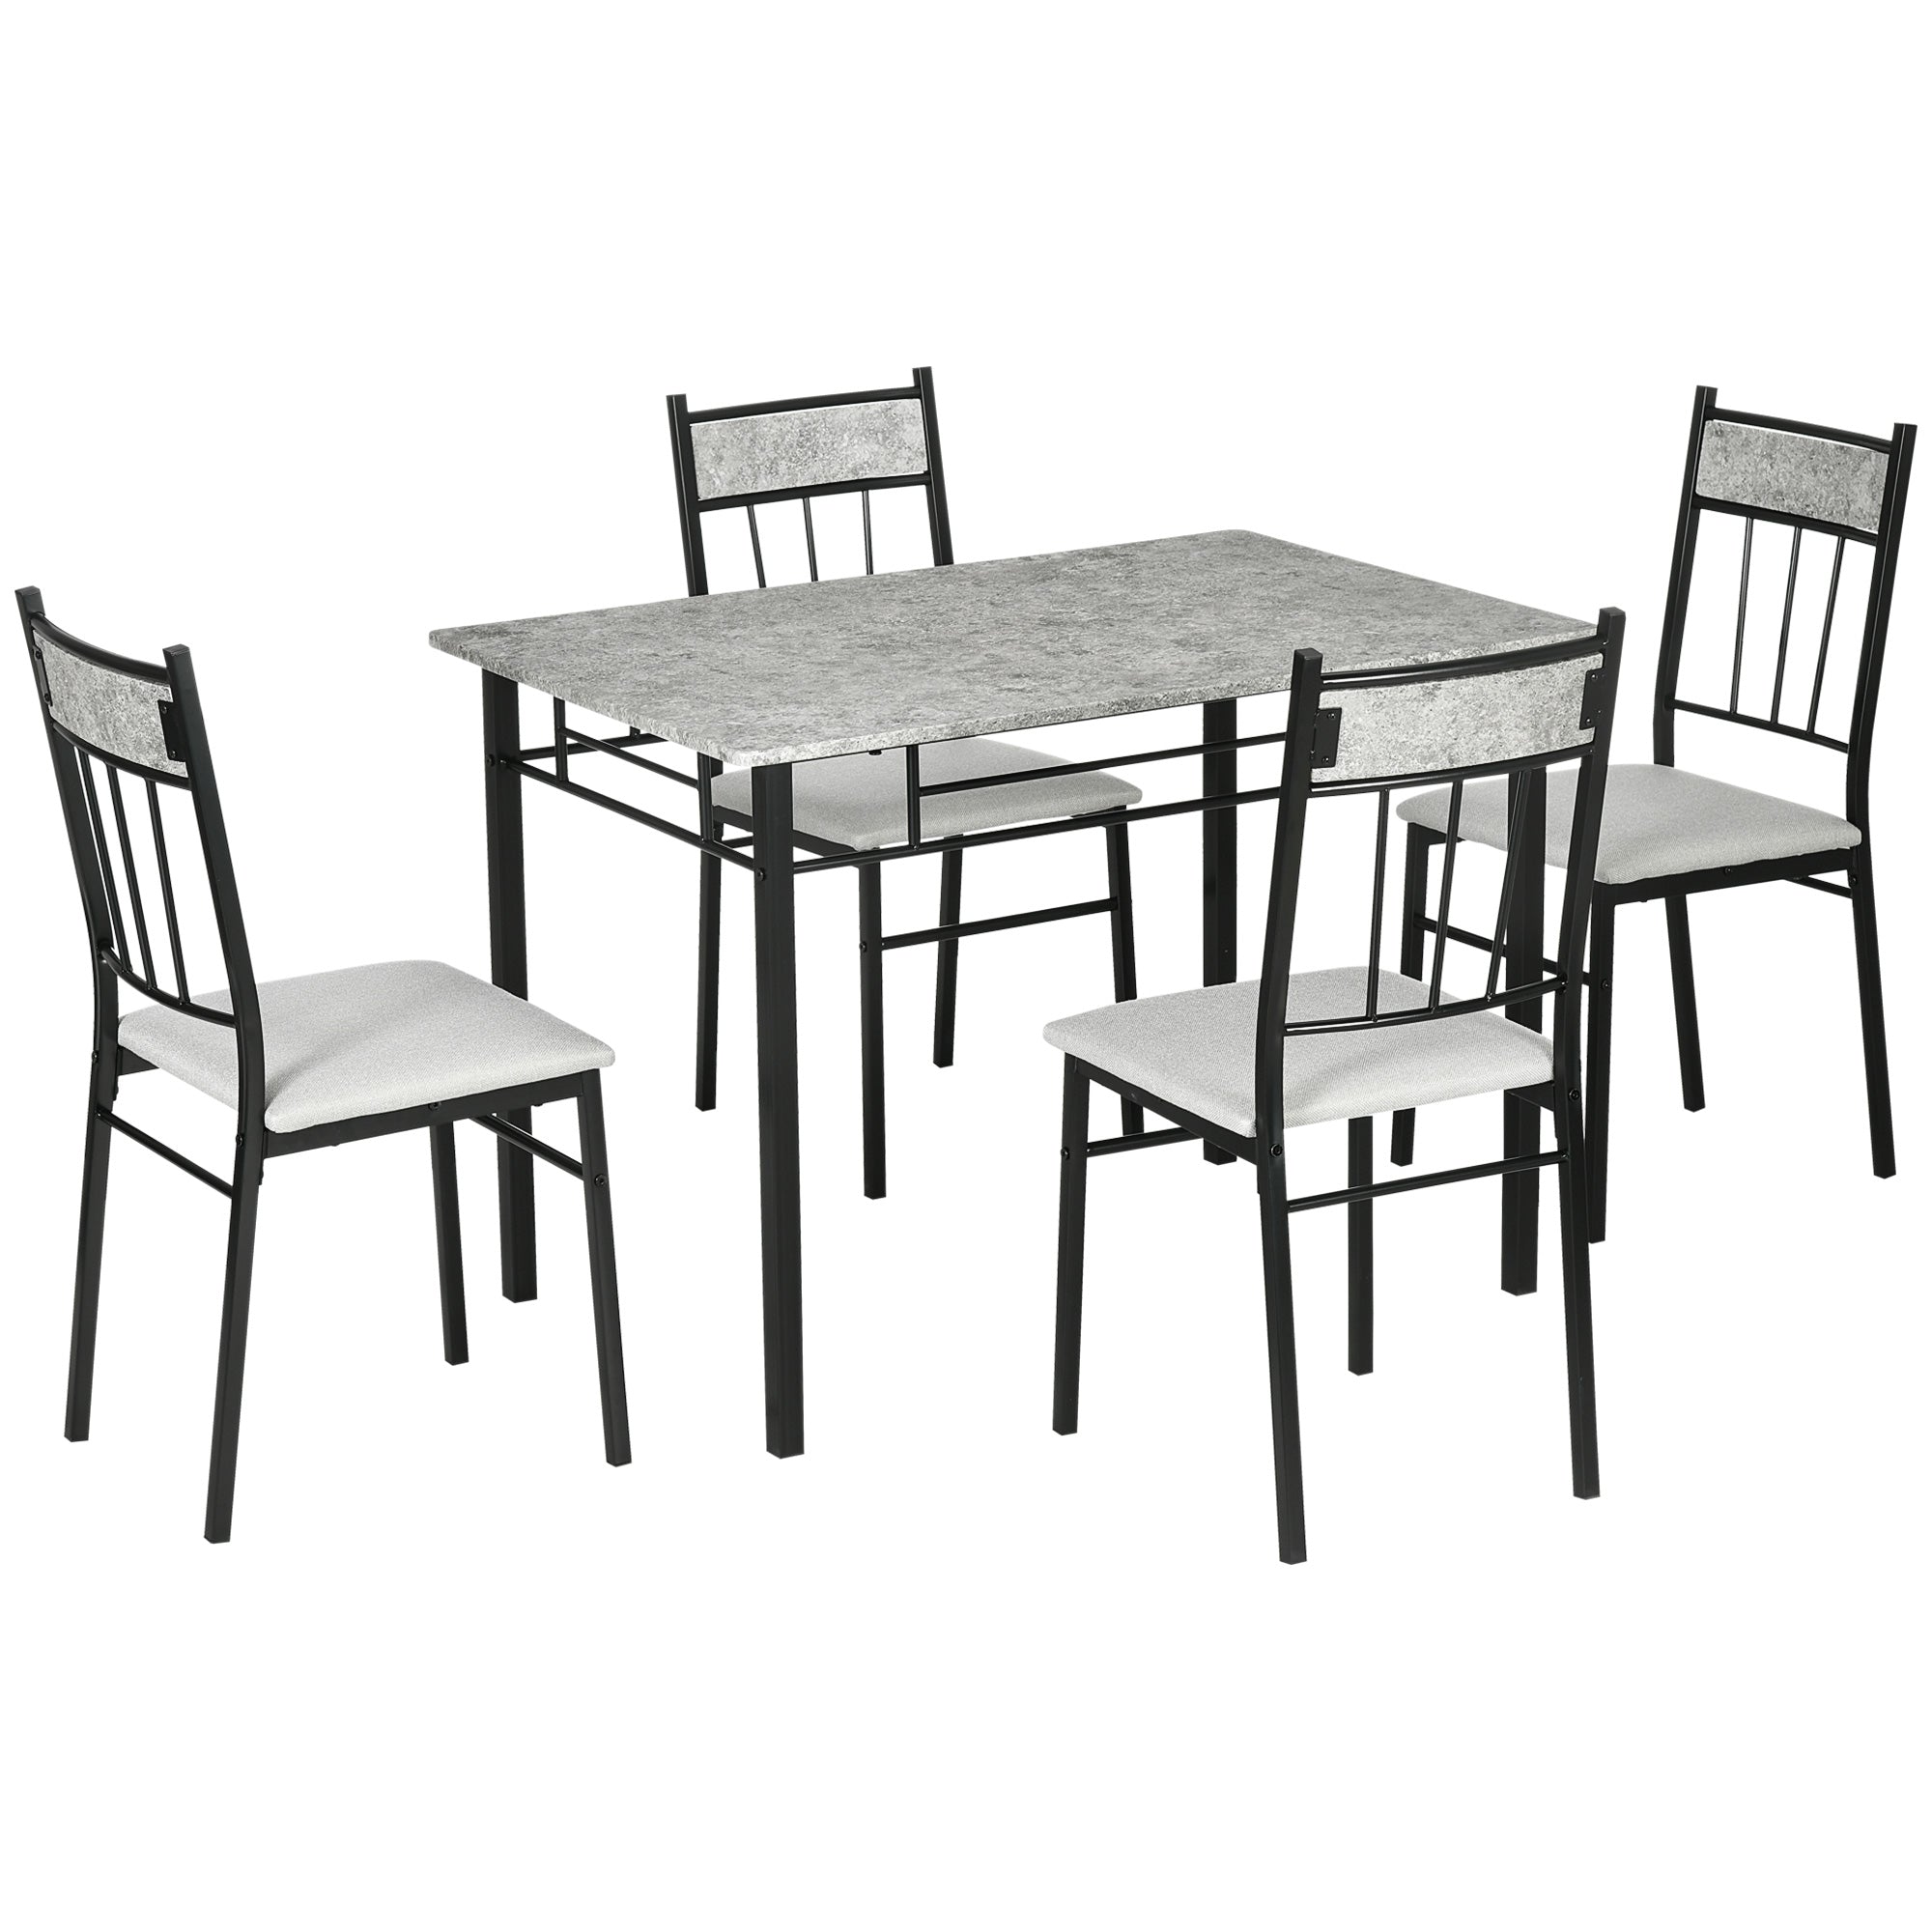 EASYCOMFORT Set Tavolo e Sedie 5 Pezzi Salvaspazio con Tavolo da Cucina  Rettangolare e 4 Sedie Moderne, in MDF e Acciaio